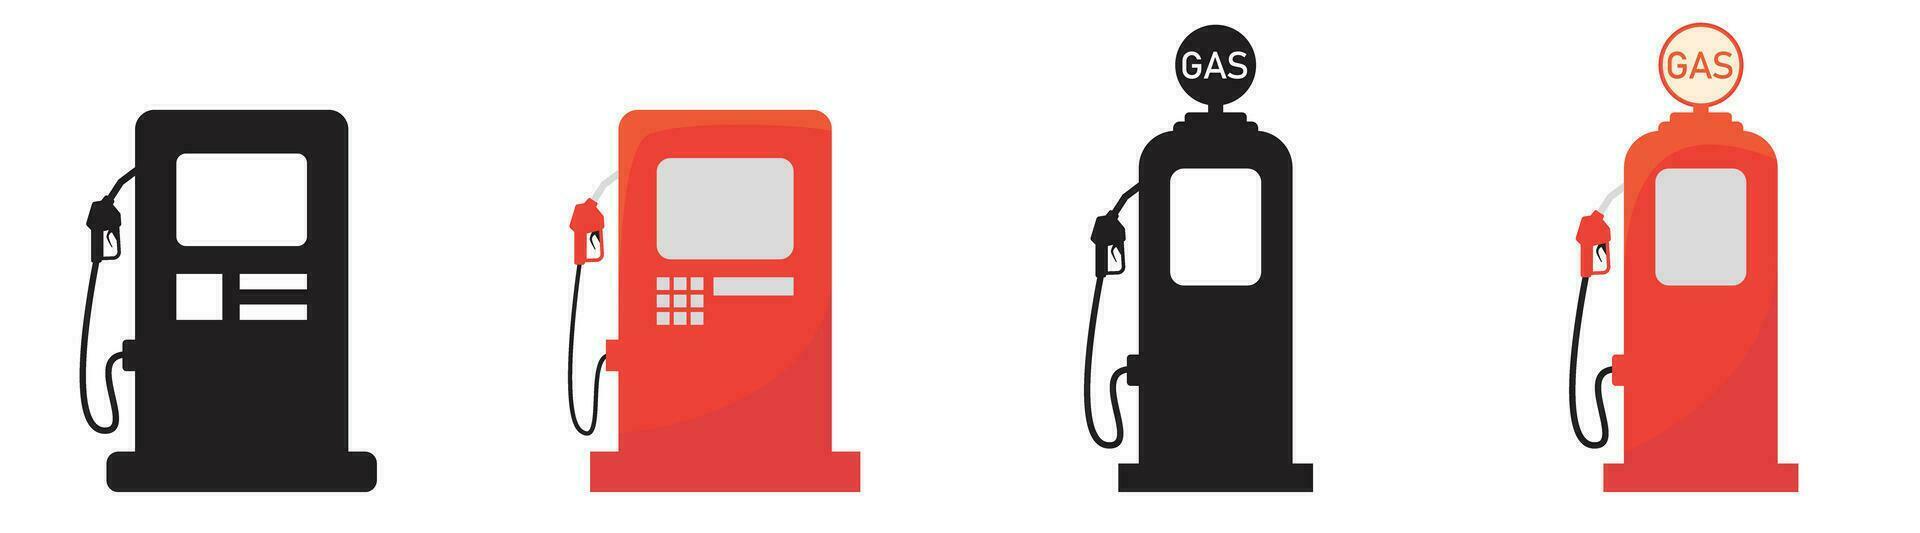 gas estación icono la carretera firmar gasolina combustible vector